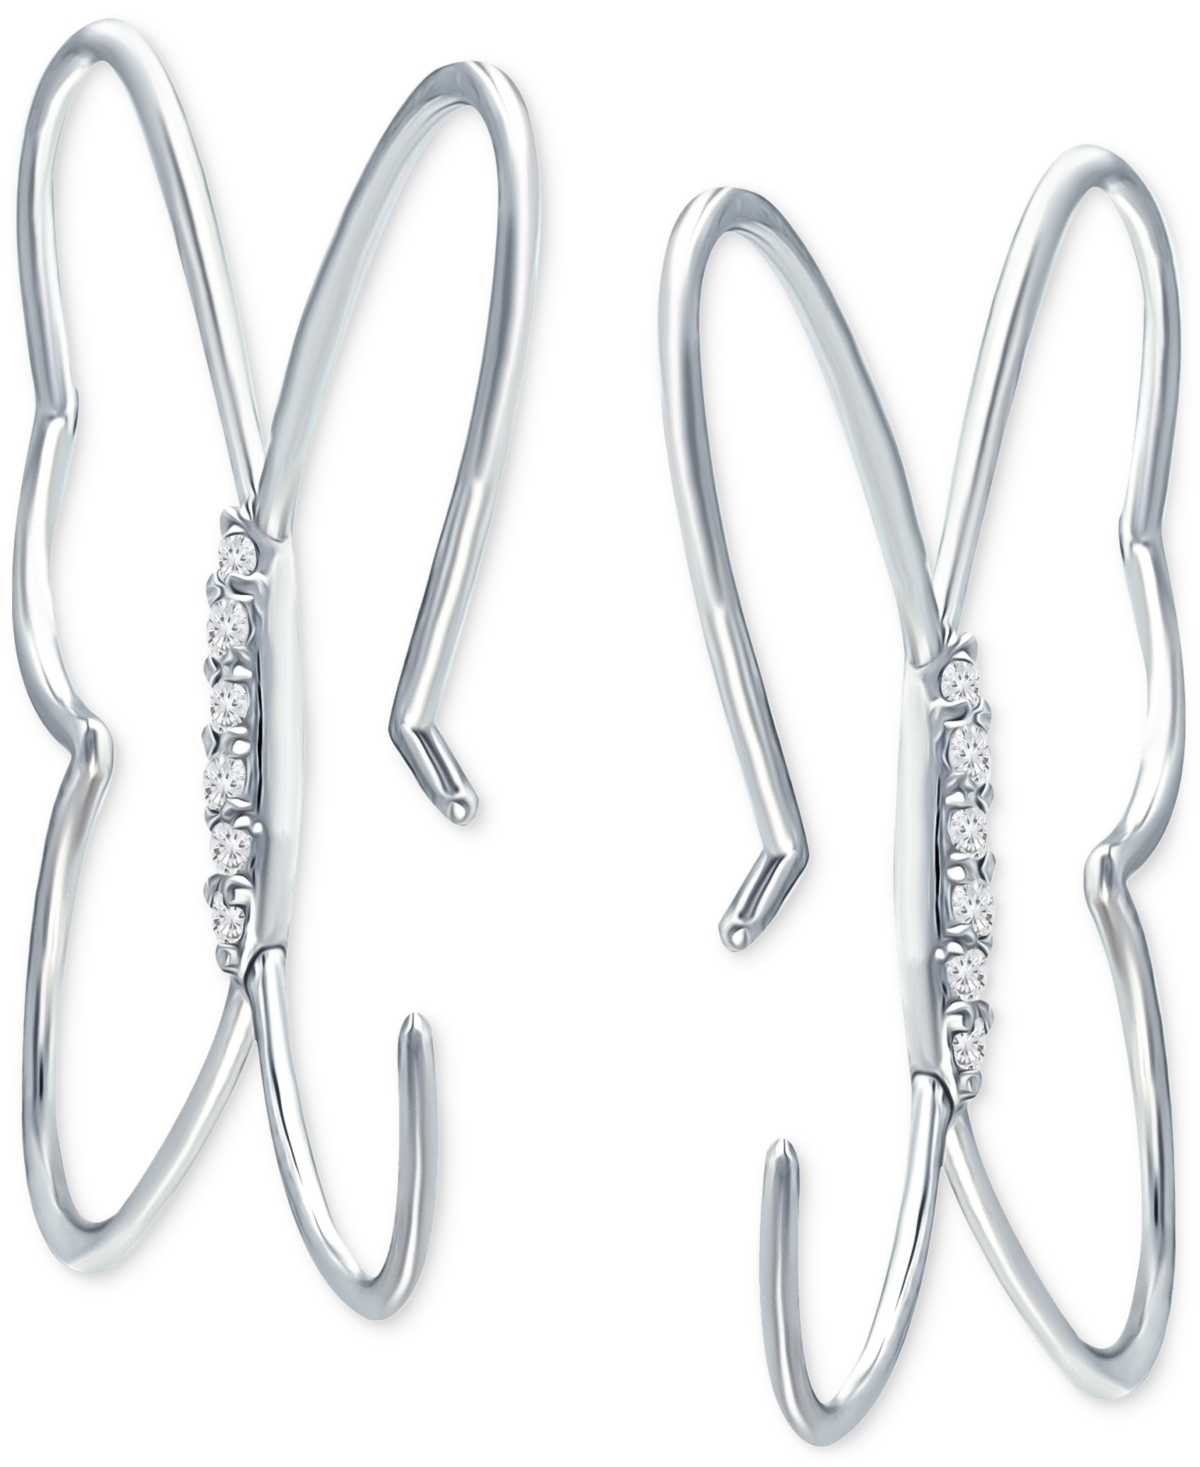 Giani Bernini Cubic Zirconia Butterfly Hoop Earrings, Created For Macy's In Silver